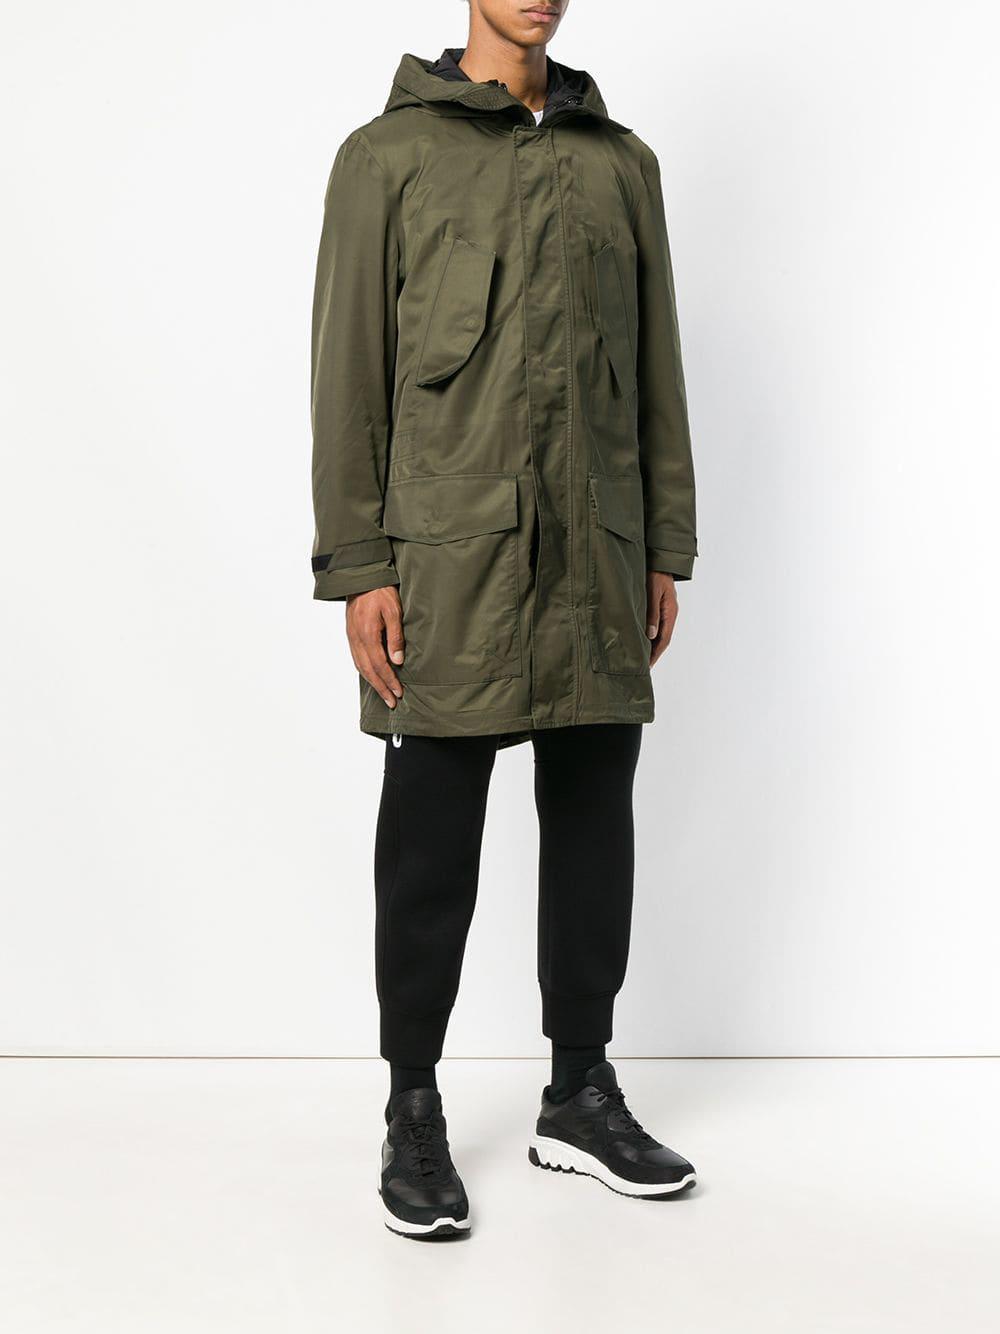 Neil Barrett Synthetic Padded Underlayer Coat in Green for Men - Lyst